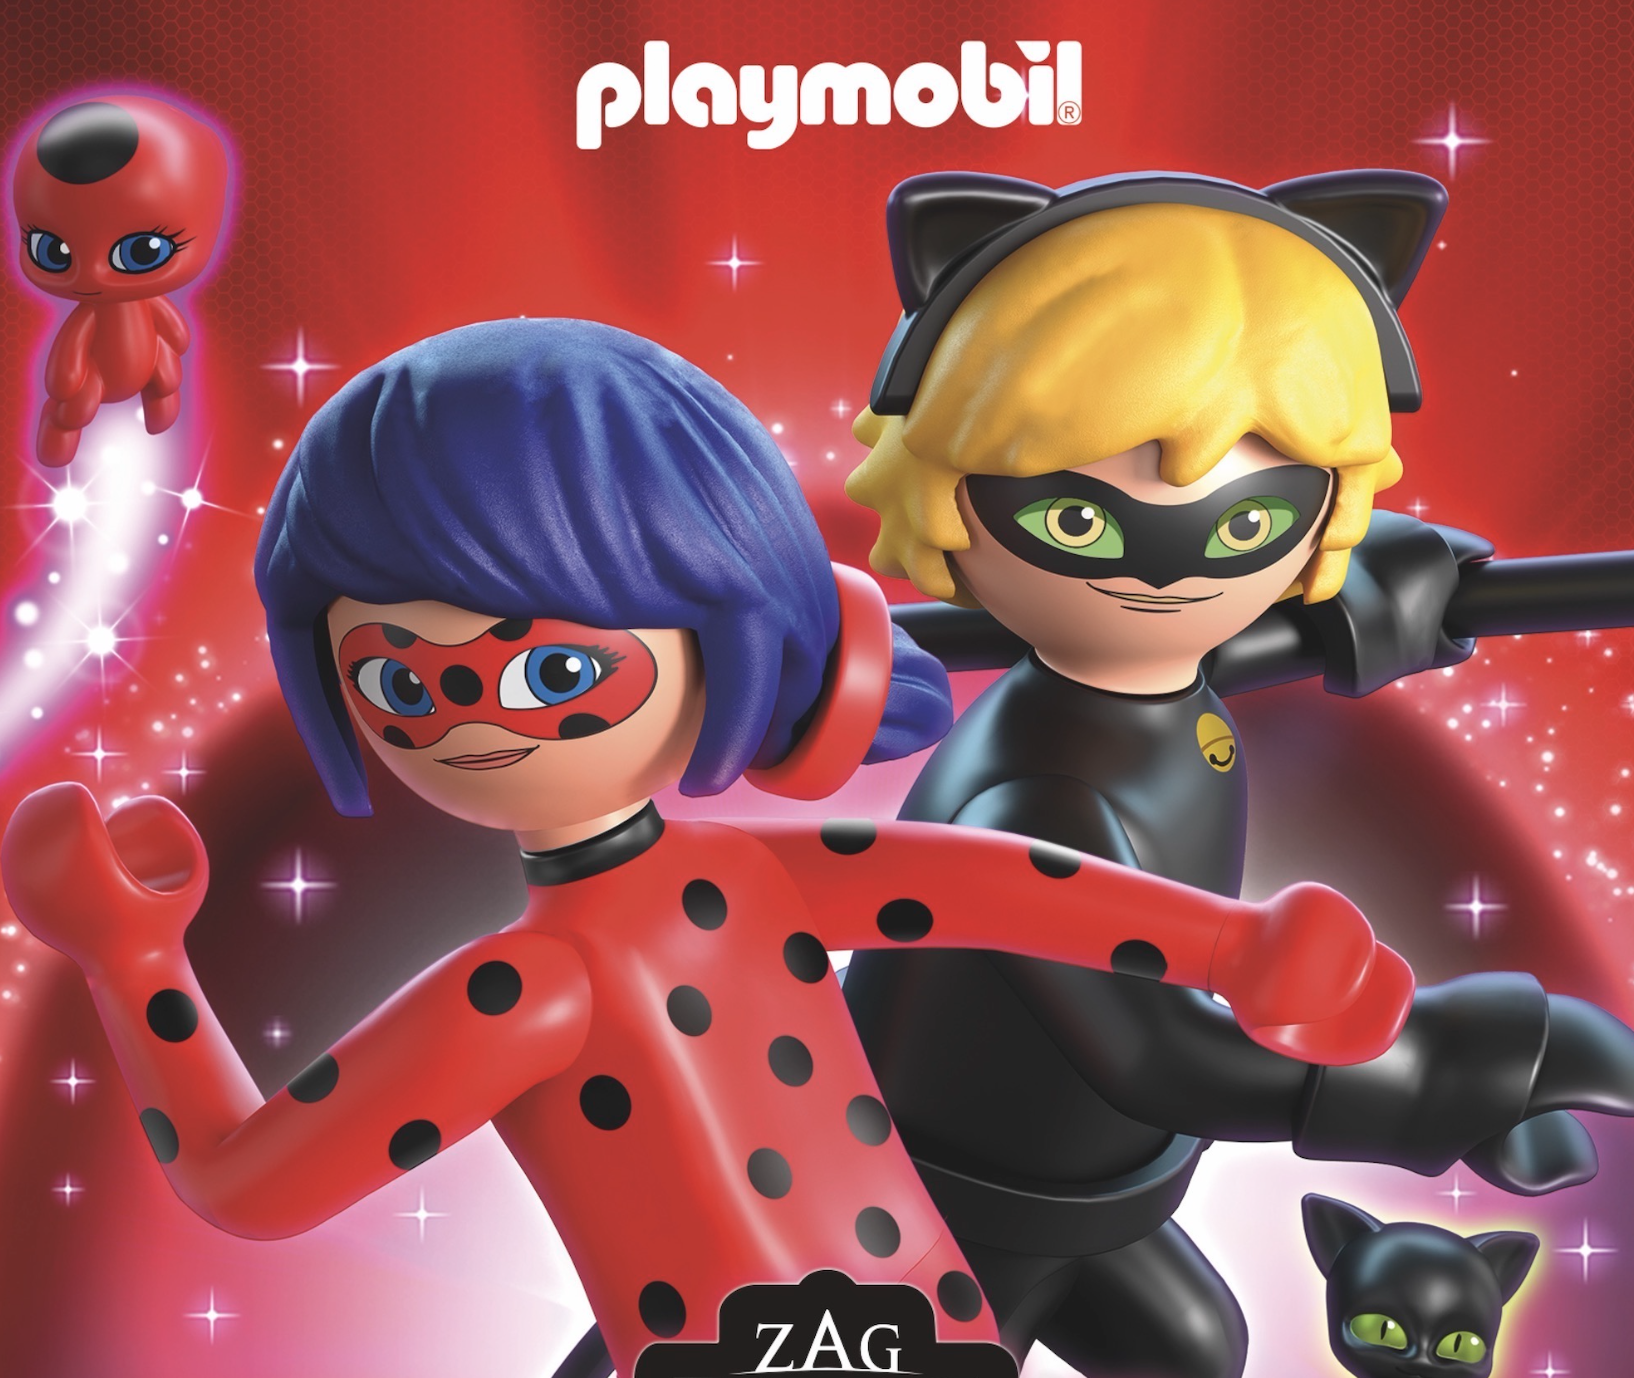 ZAG Play faz parceria com a PLAYMOBIL® para linha global de